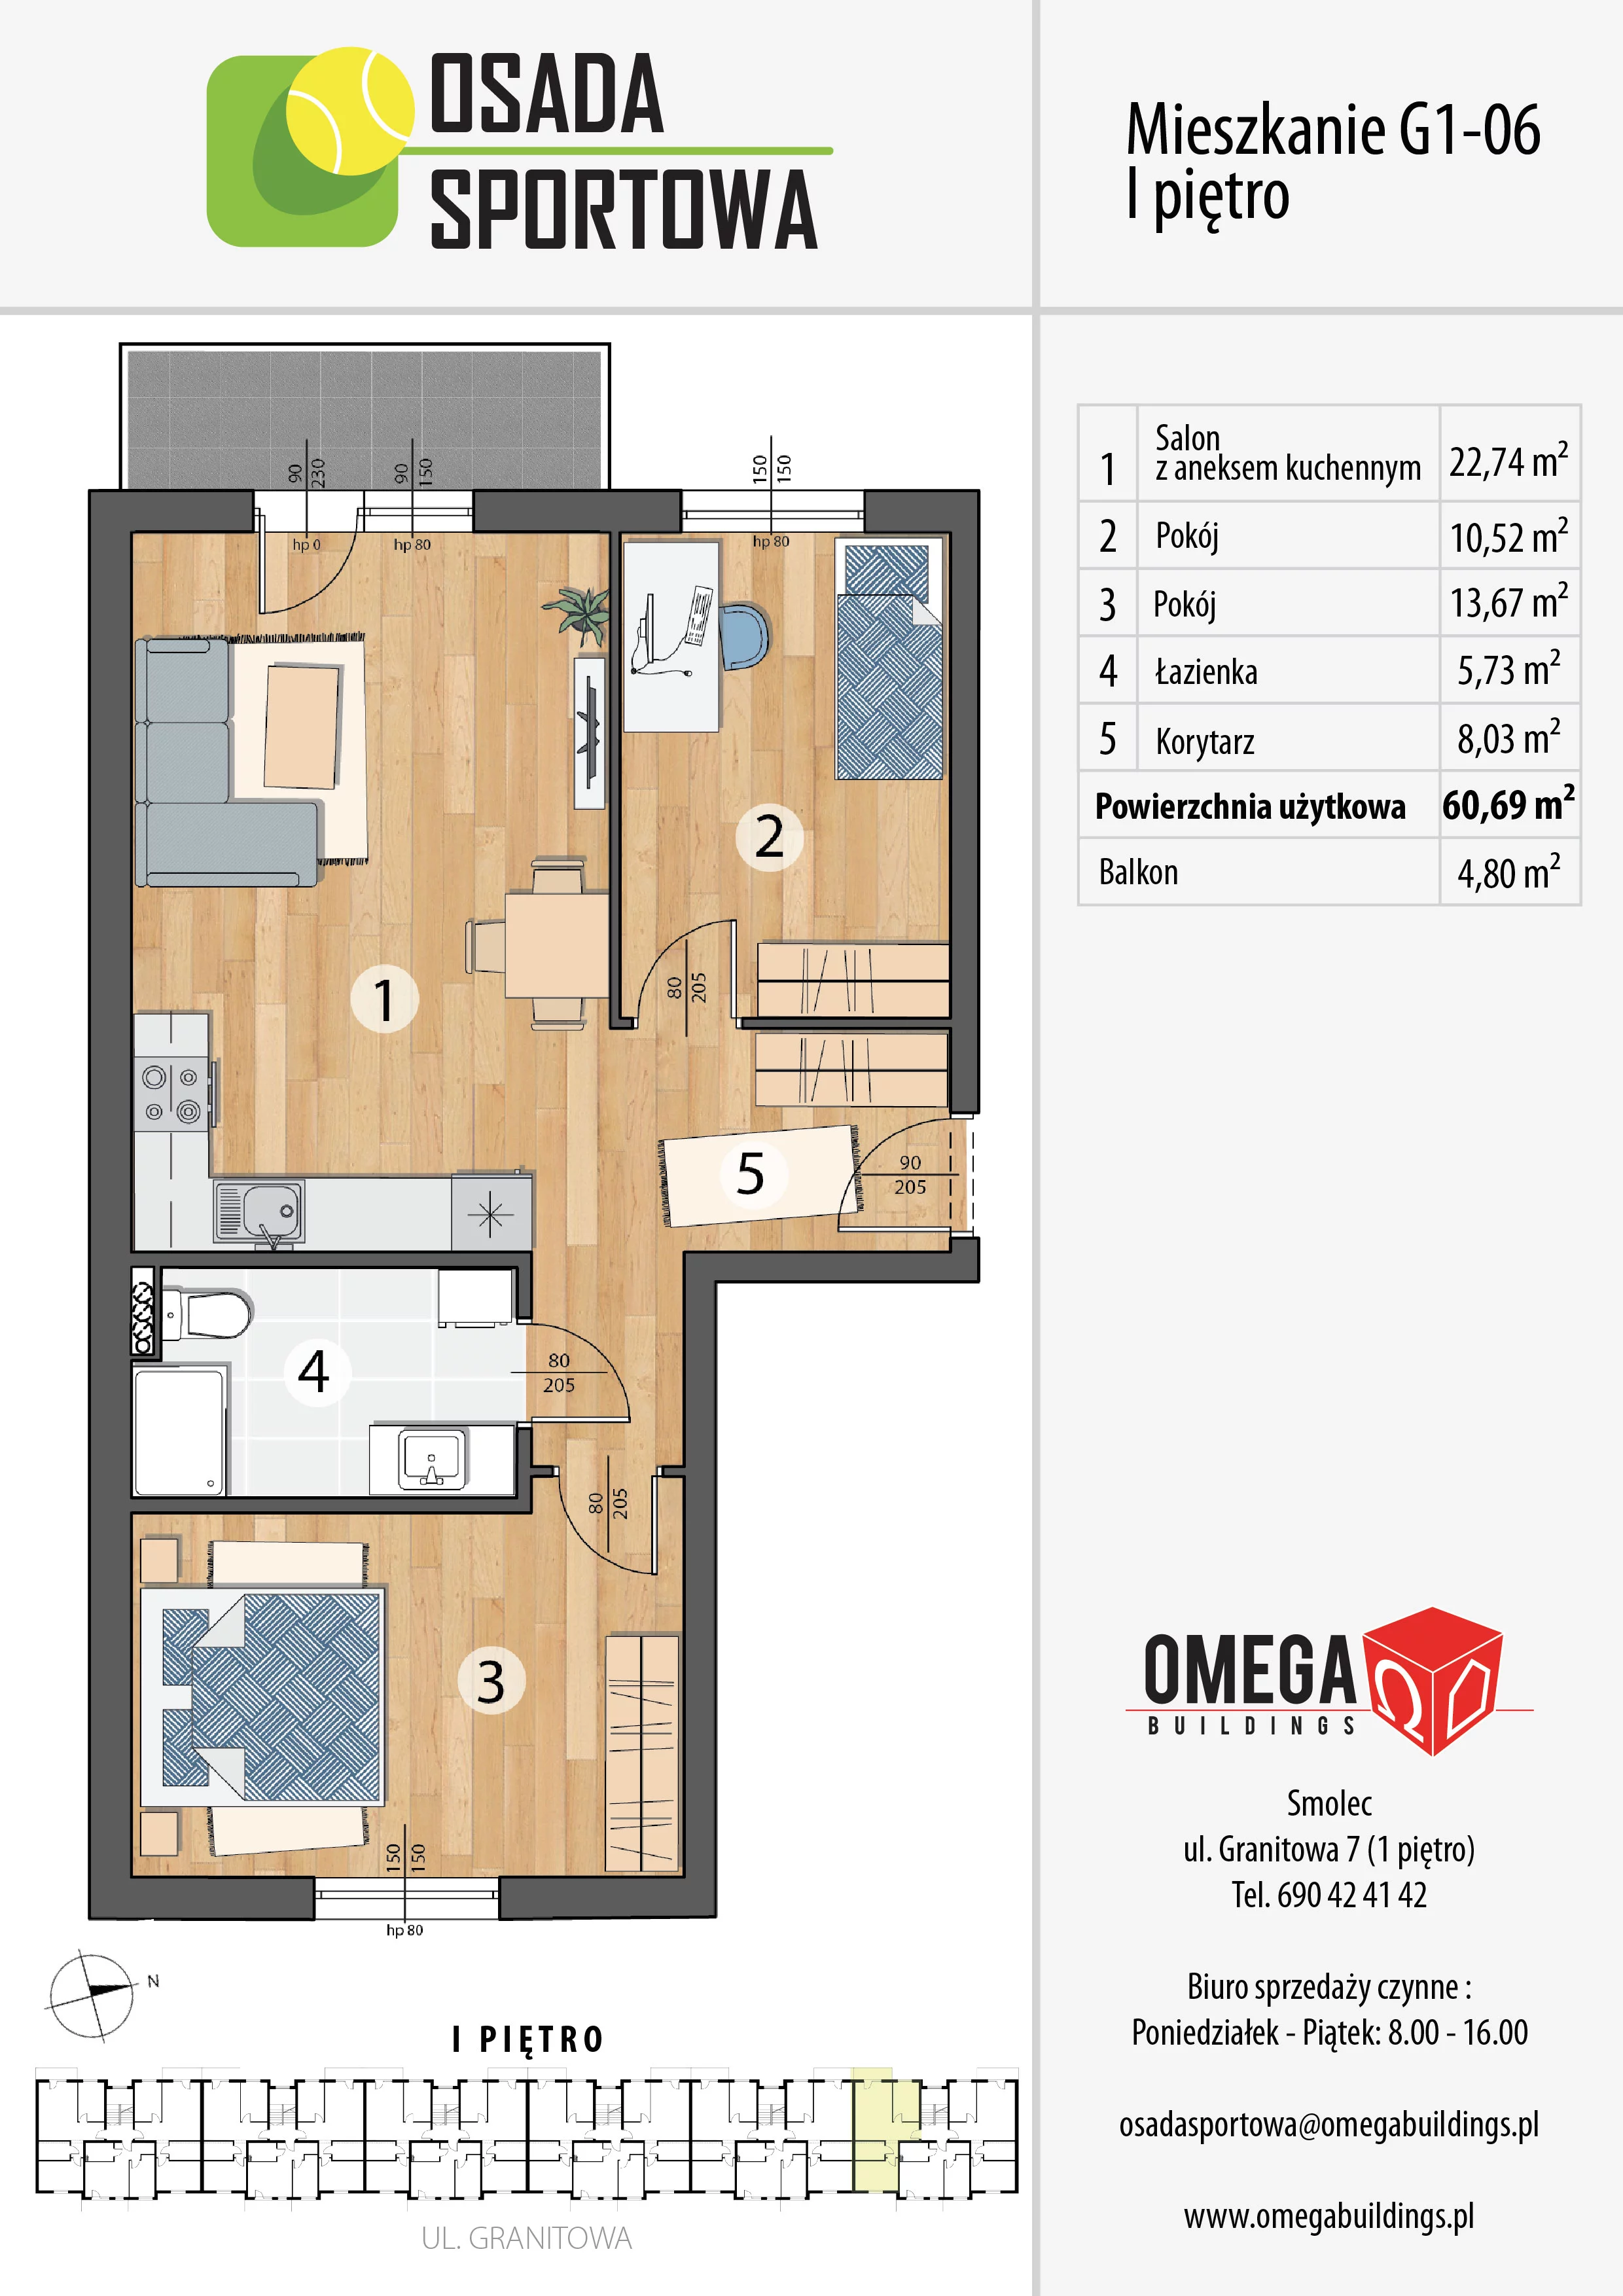 Mieszkanie 60,69 m², piętro 1, oferta nr G1-06, Osada Sportowa Budynek G, Smolec, ul. Granitowa 52-62